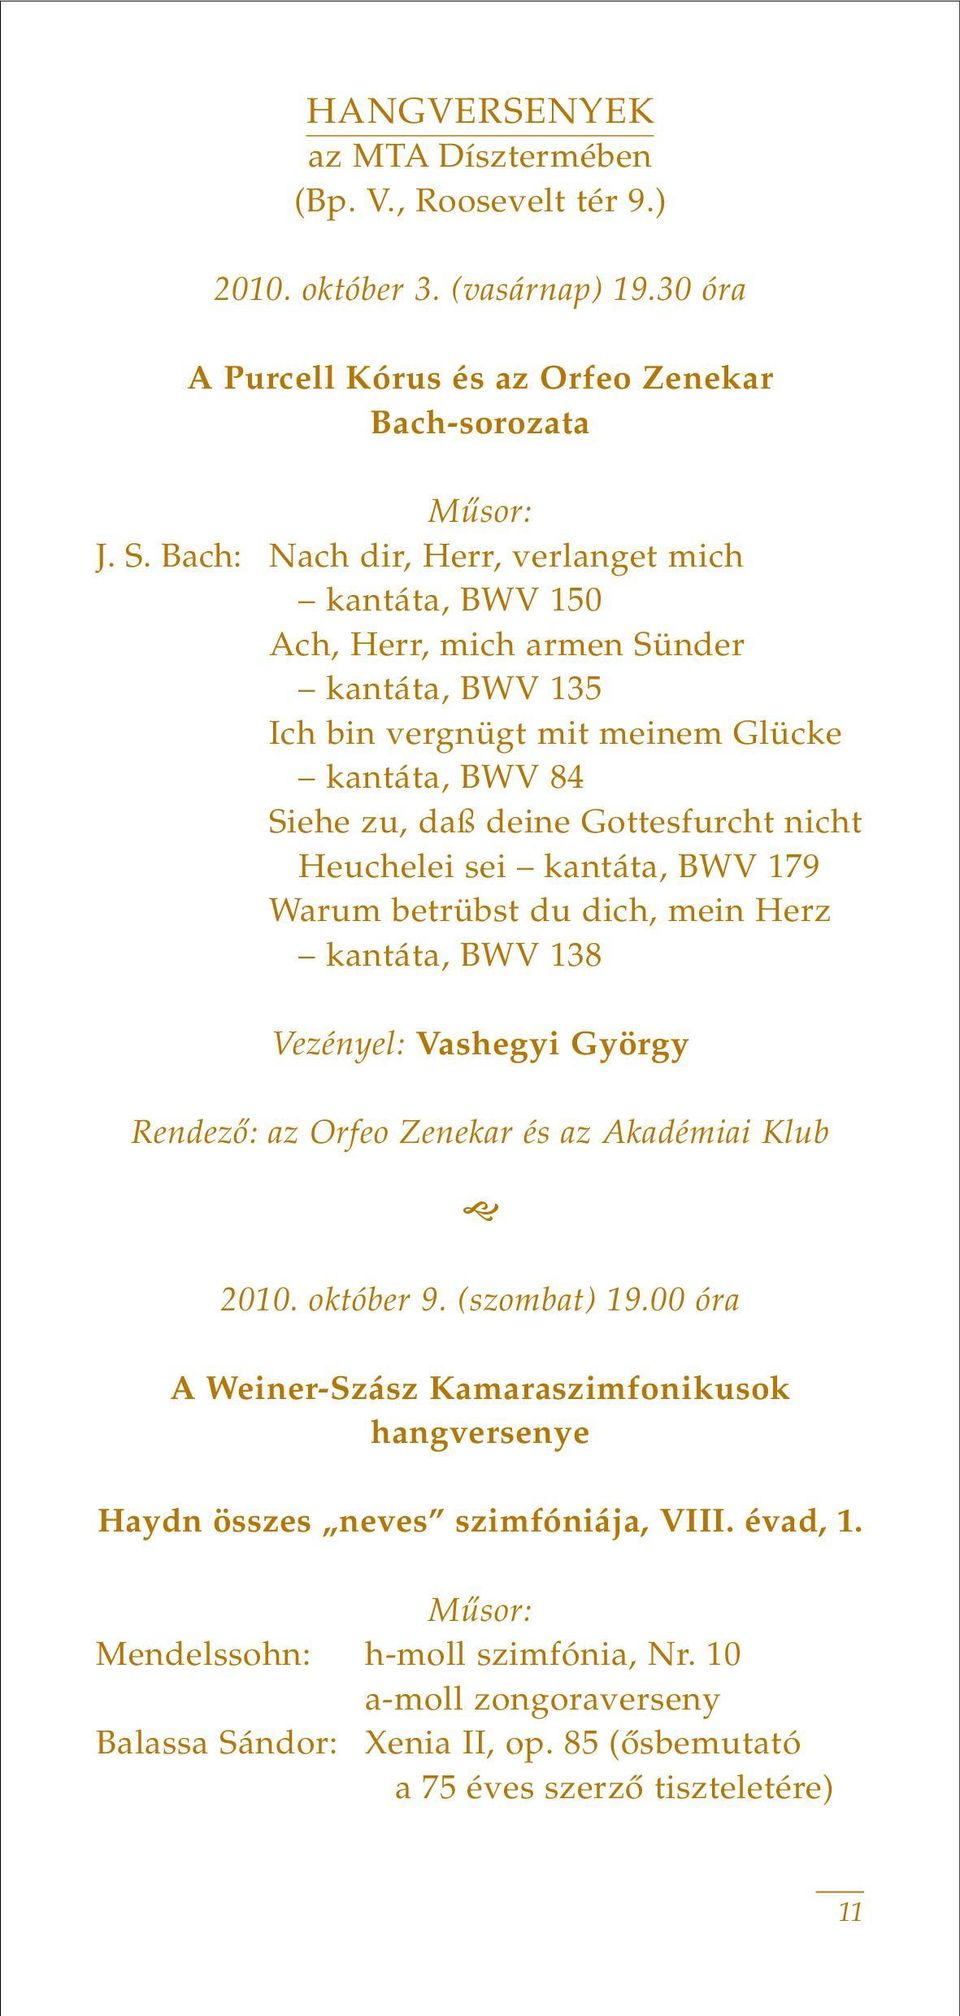 Heuchelei sei kantáta, BWV 179 Warum betrübst du dich, mein Herz kantáta, BWV 138 Vezényel: Vashegyi György Rendezô: az Orfeo Zenekar és az Akadémiai Klub 2010. október 9. (szombat) 19.